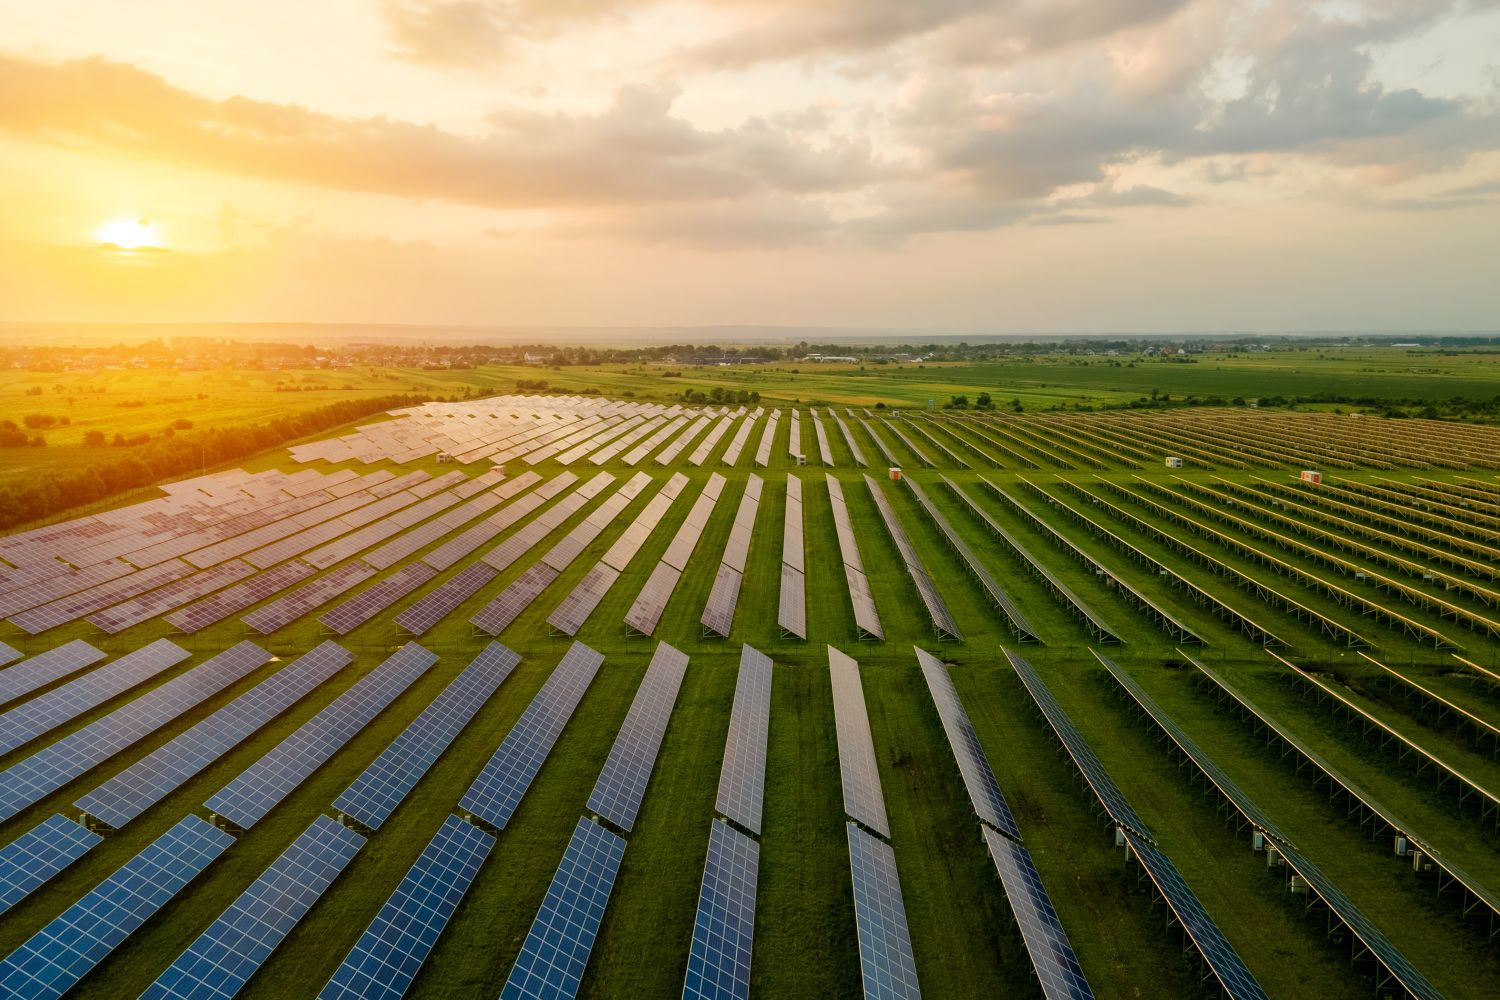 Luftaufnahme eines großen Elektrizitätswerks mit vielen Reihen von Photovoltaikmodulen zur Erzeugung sauberer ökologischer elektrischer Energie am Morgen.